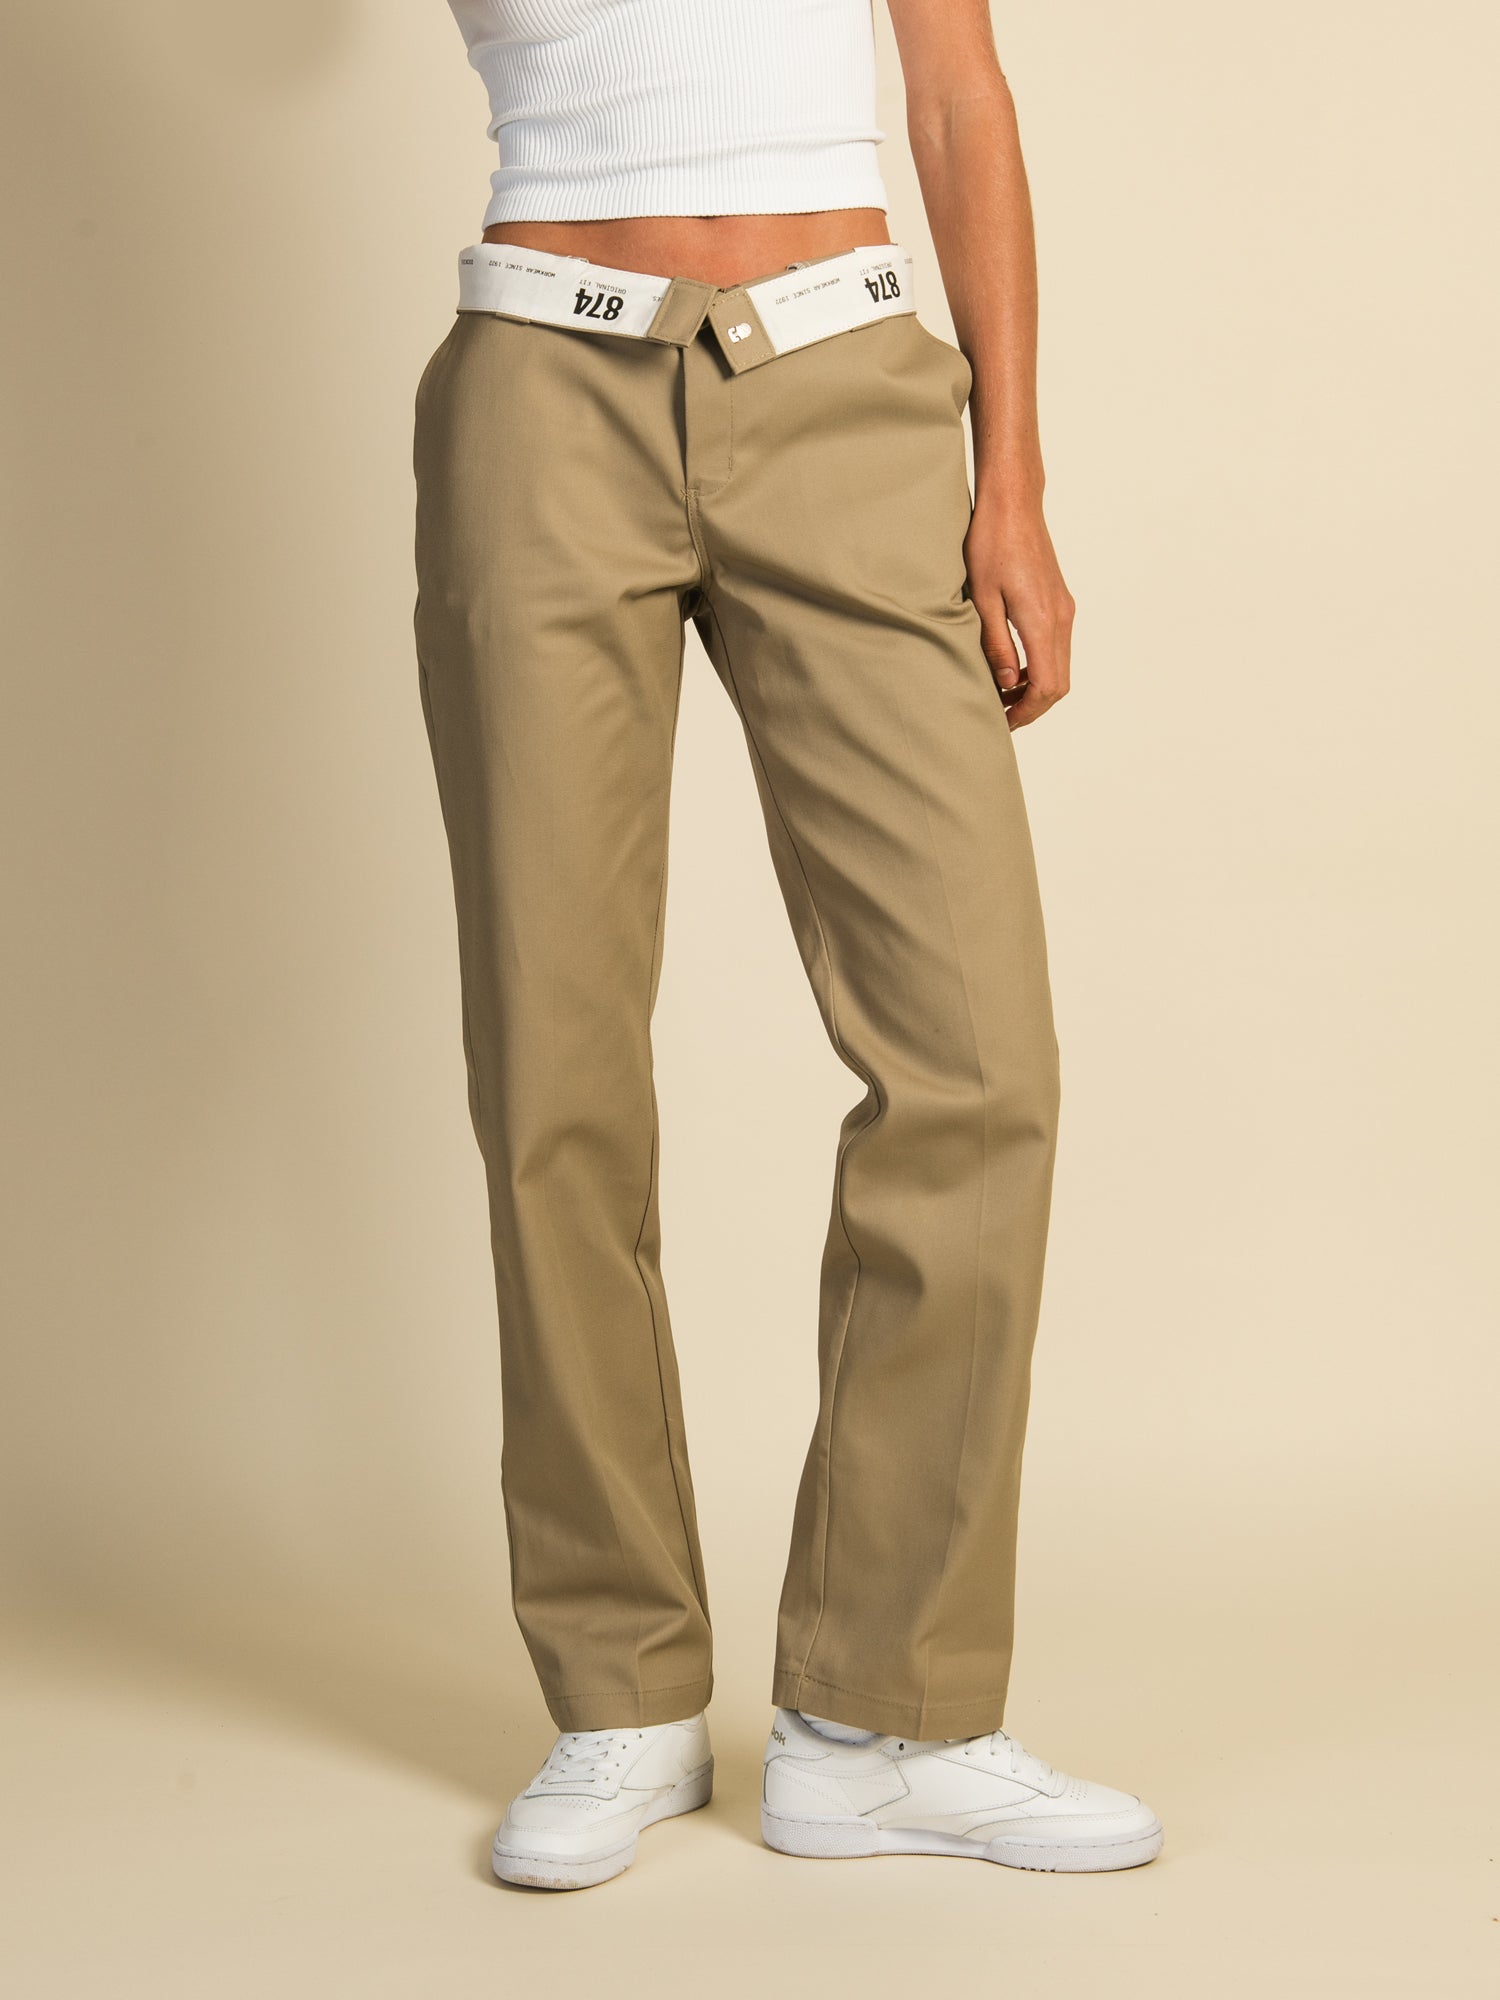 Dickies 874 straight fit work chino pants in dark brown  ASOS